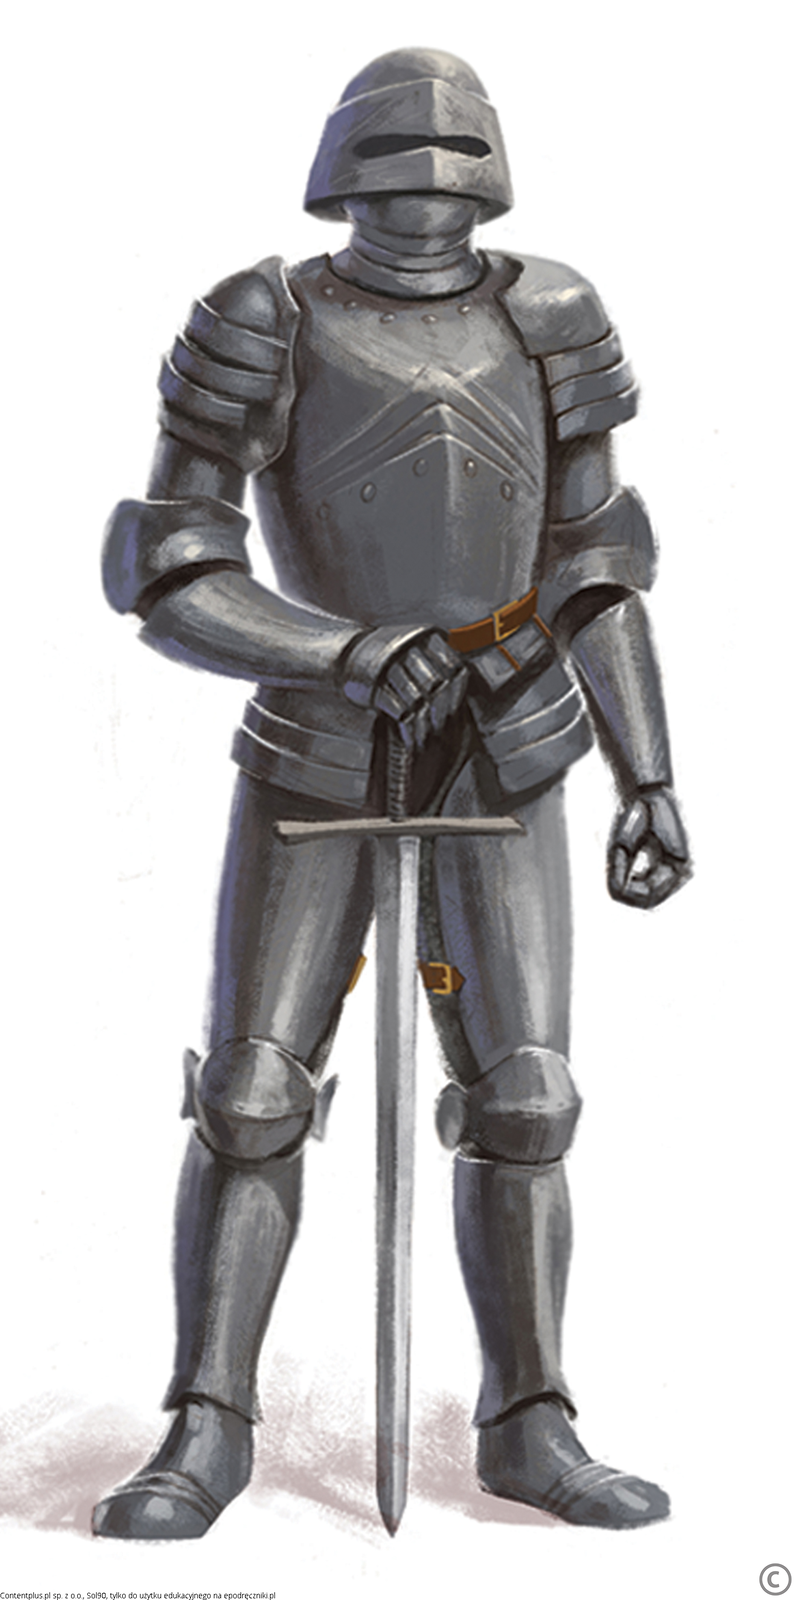 Rycerz w szarej zbroi stoi trzymając rękę na mieczu, którego czubek opiera się na ziemi. Wszystkie części ciała rycerza są osłonięte metalowymi blachami.